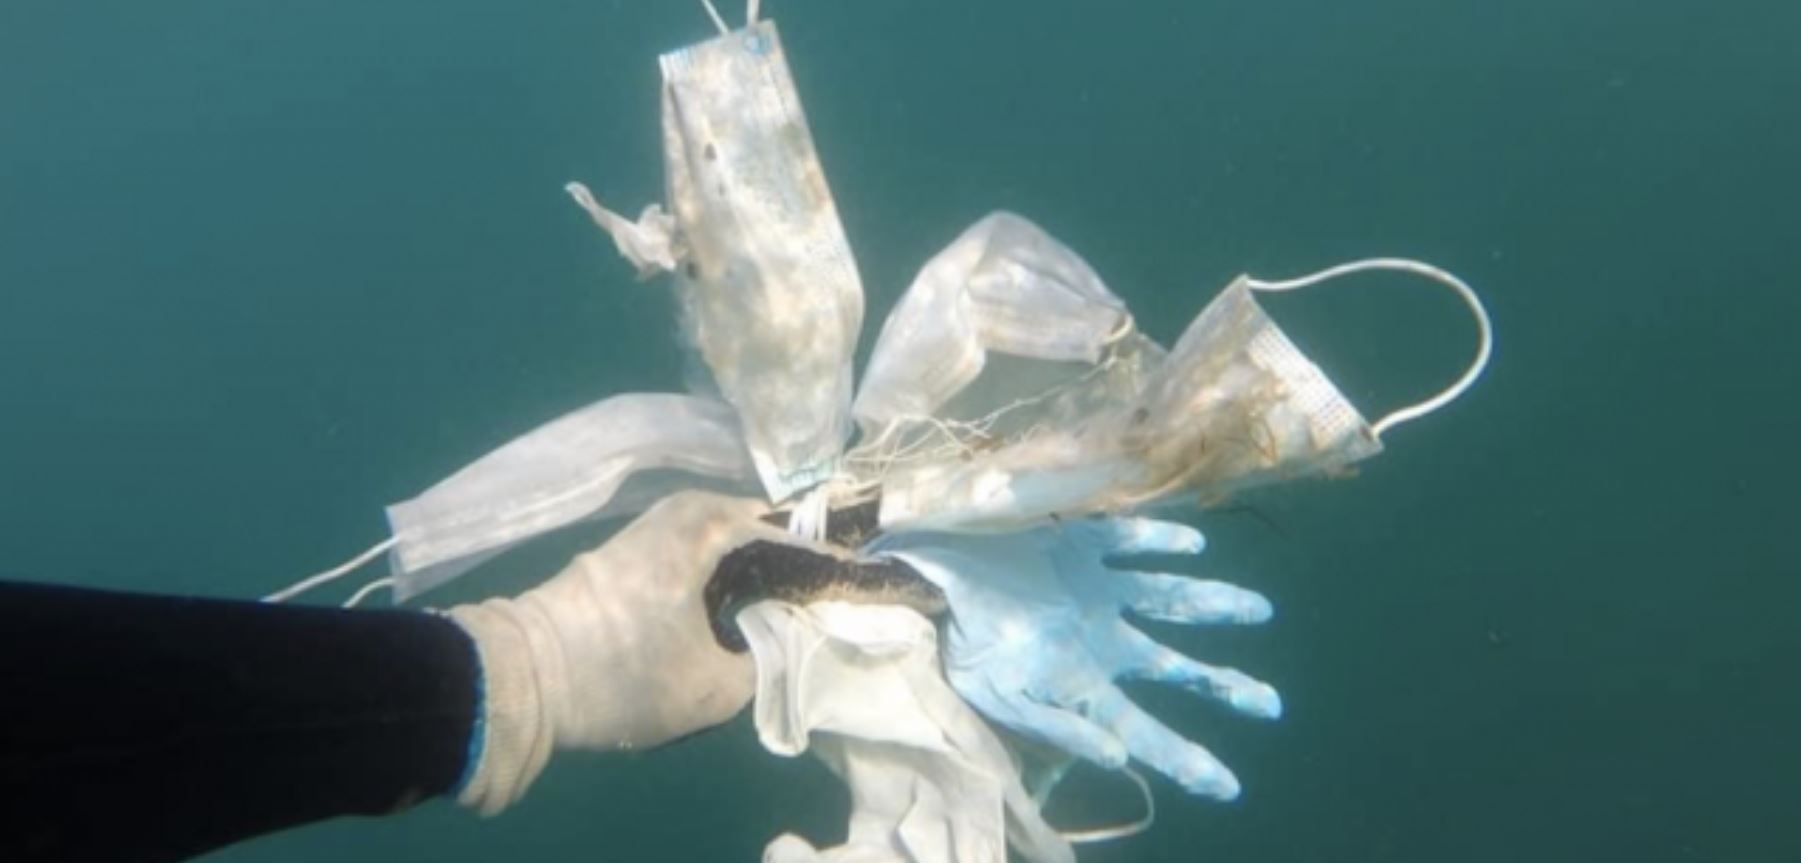 Residuos de mascarillas, guantes contra la COVID-19 recogidos del fondo marino / Foto: LMP